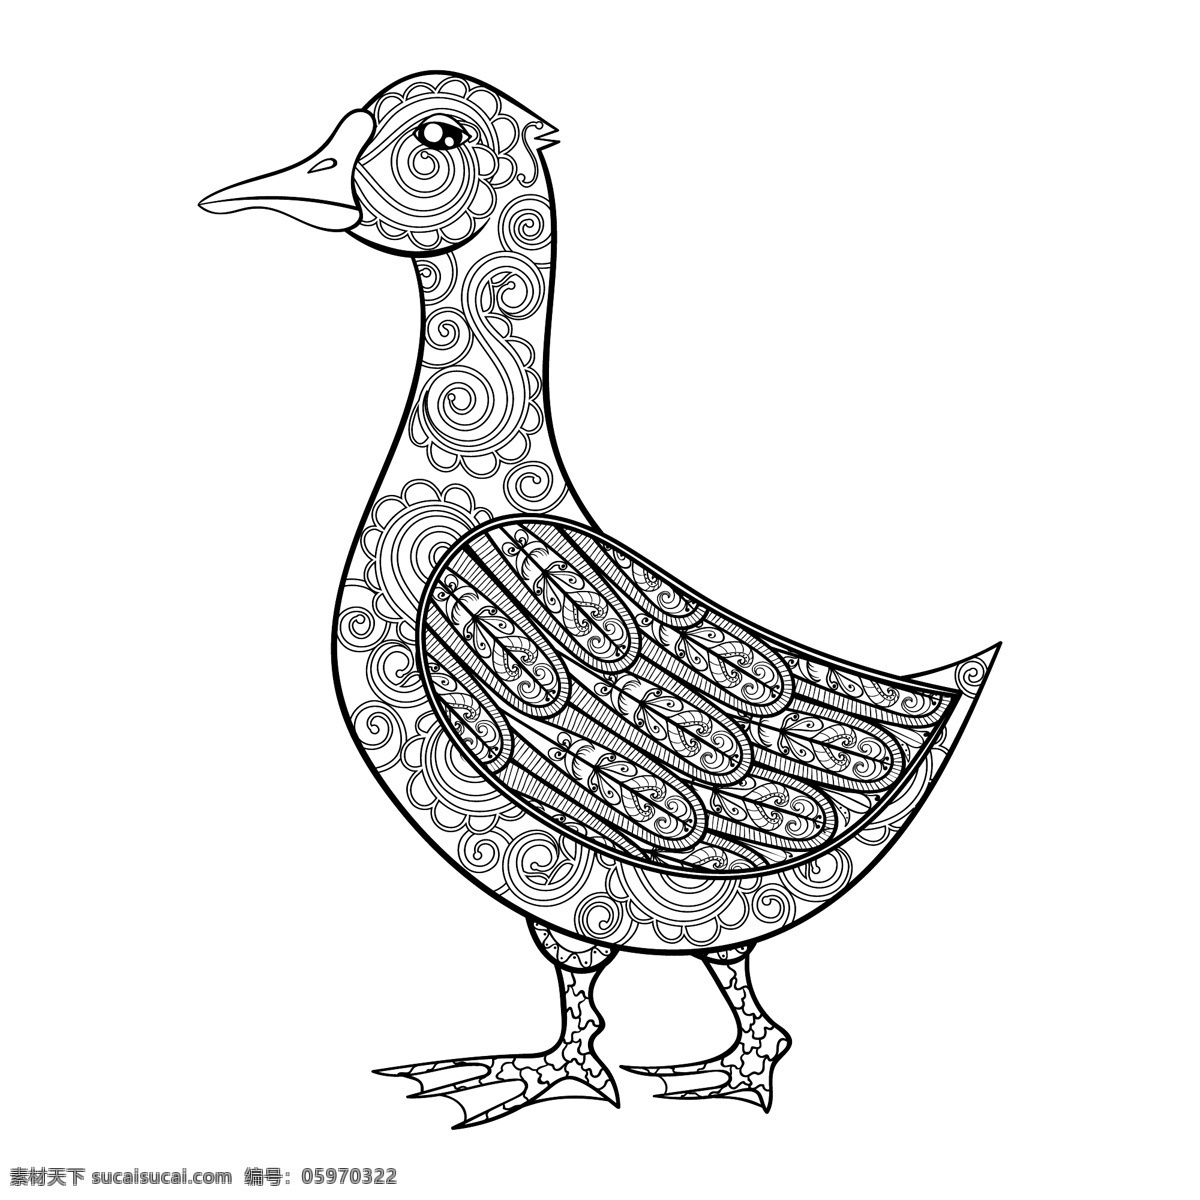 黑白 艺术 动物 鸭子 插画 可爱 家禽